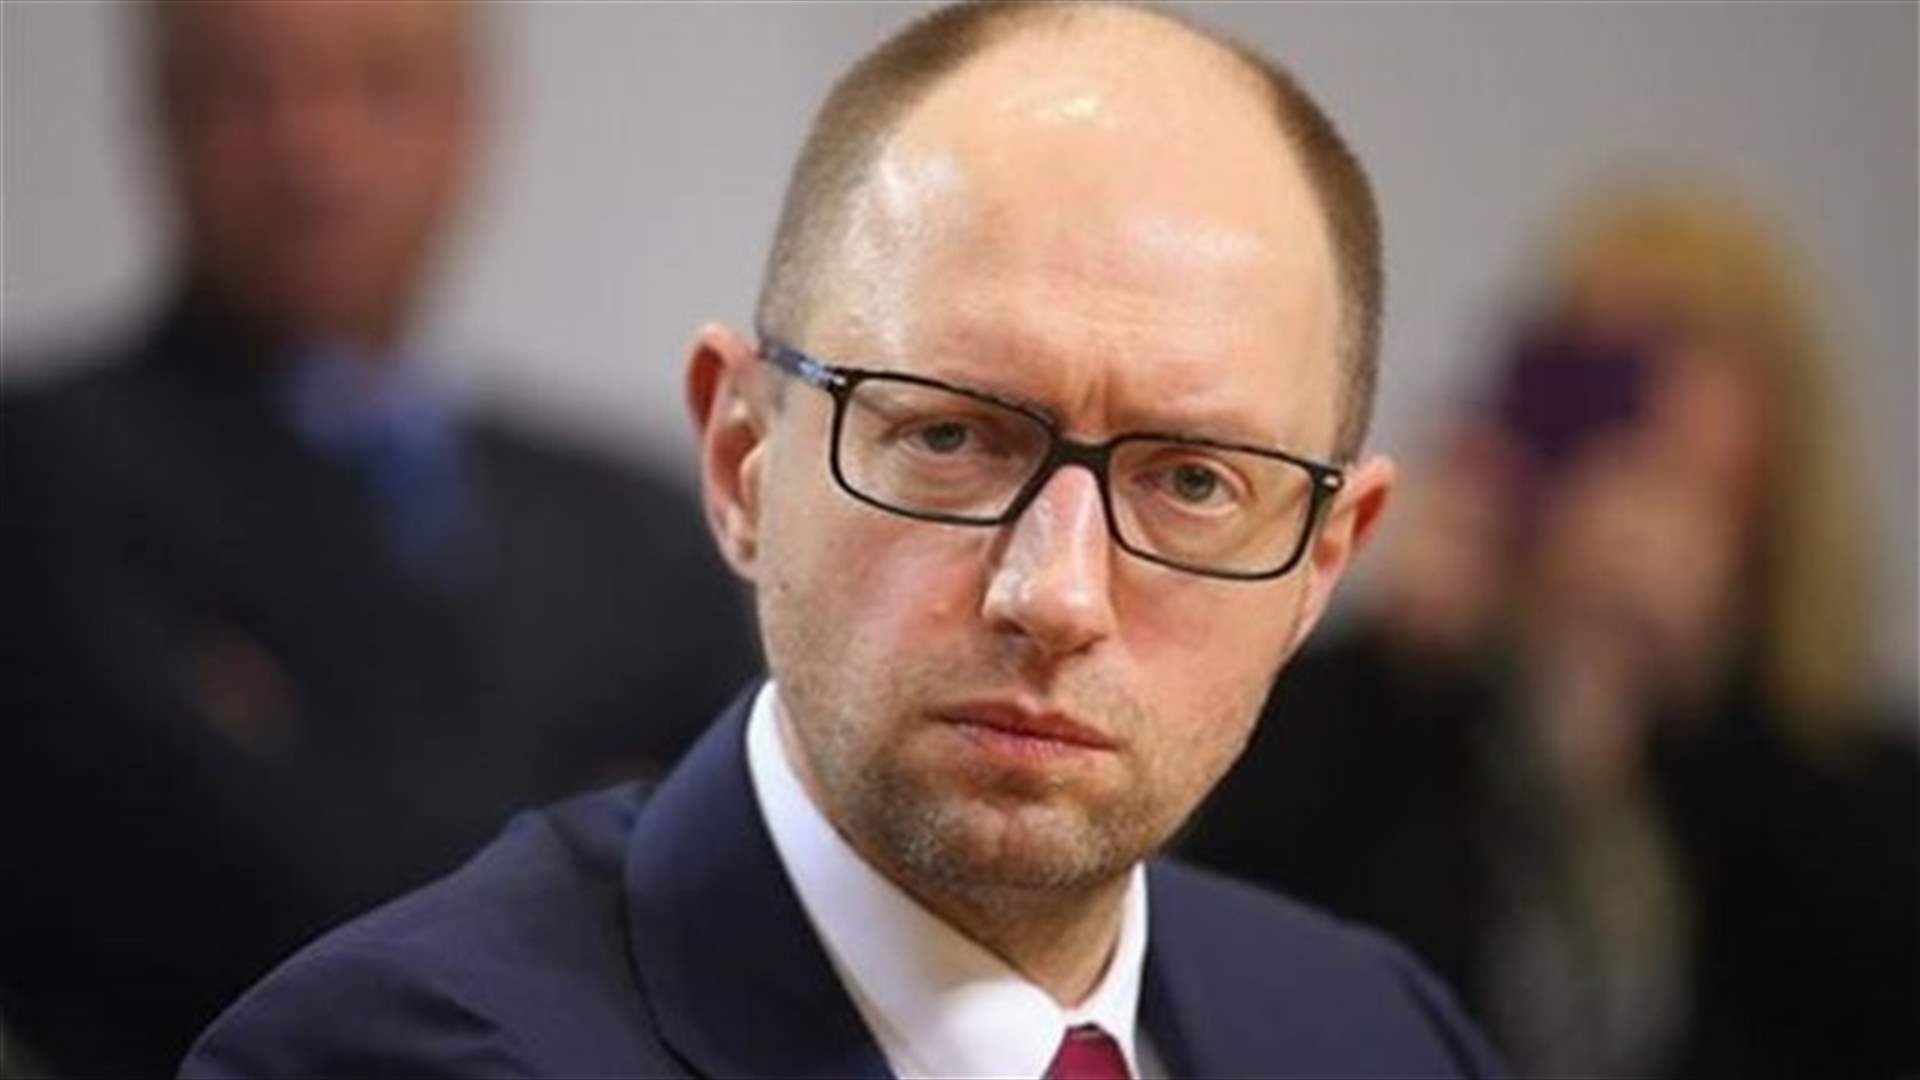 رئيس حكومة اوكرانيا يطلب احالة موزعي مناشير مناهضة لليهود للقضاء